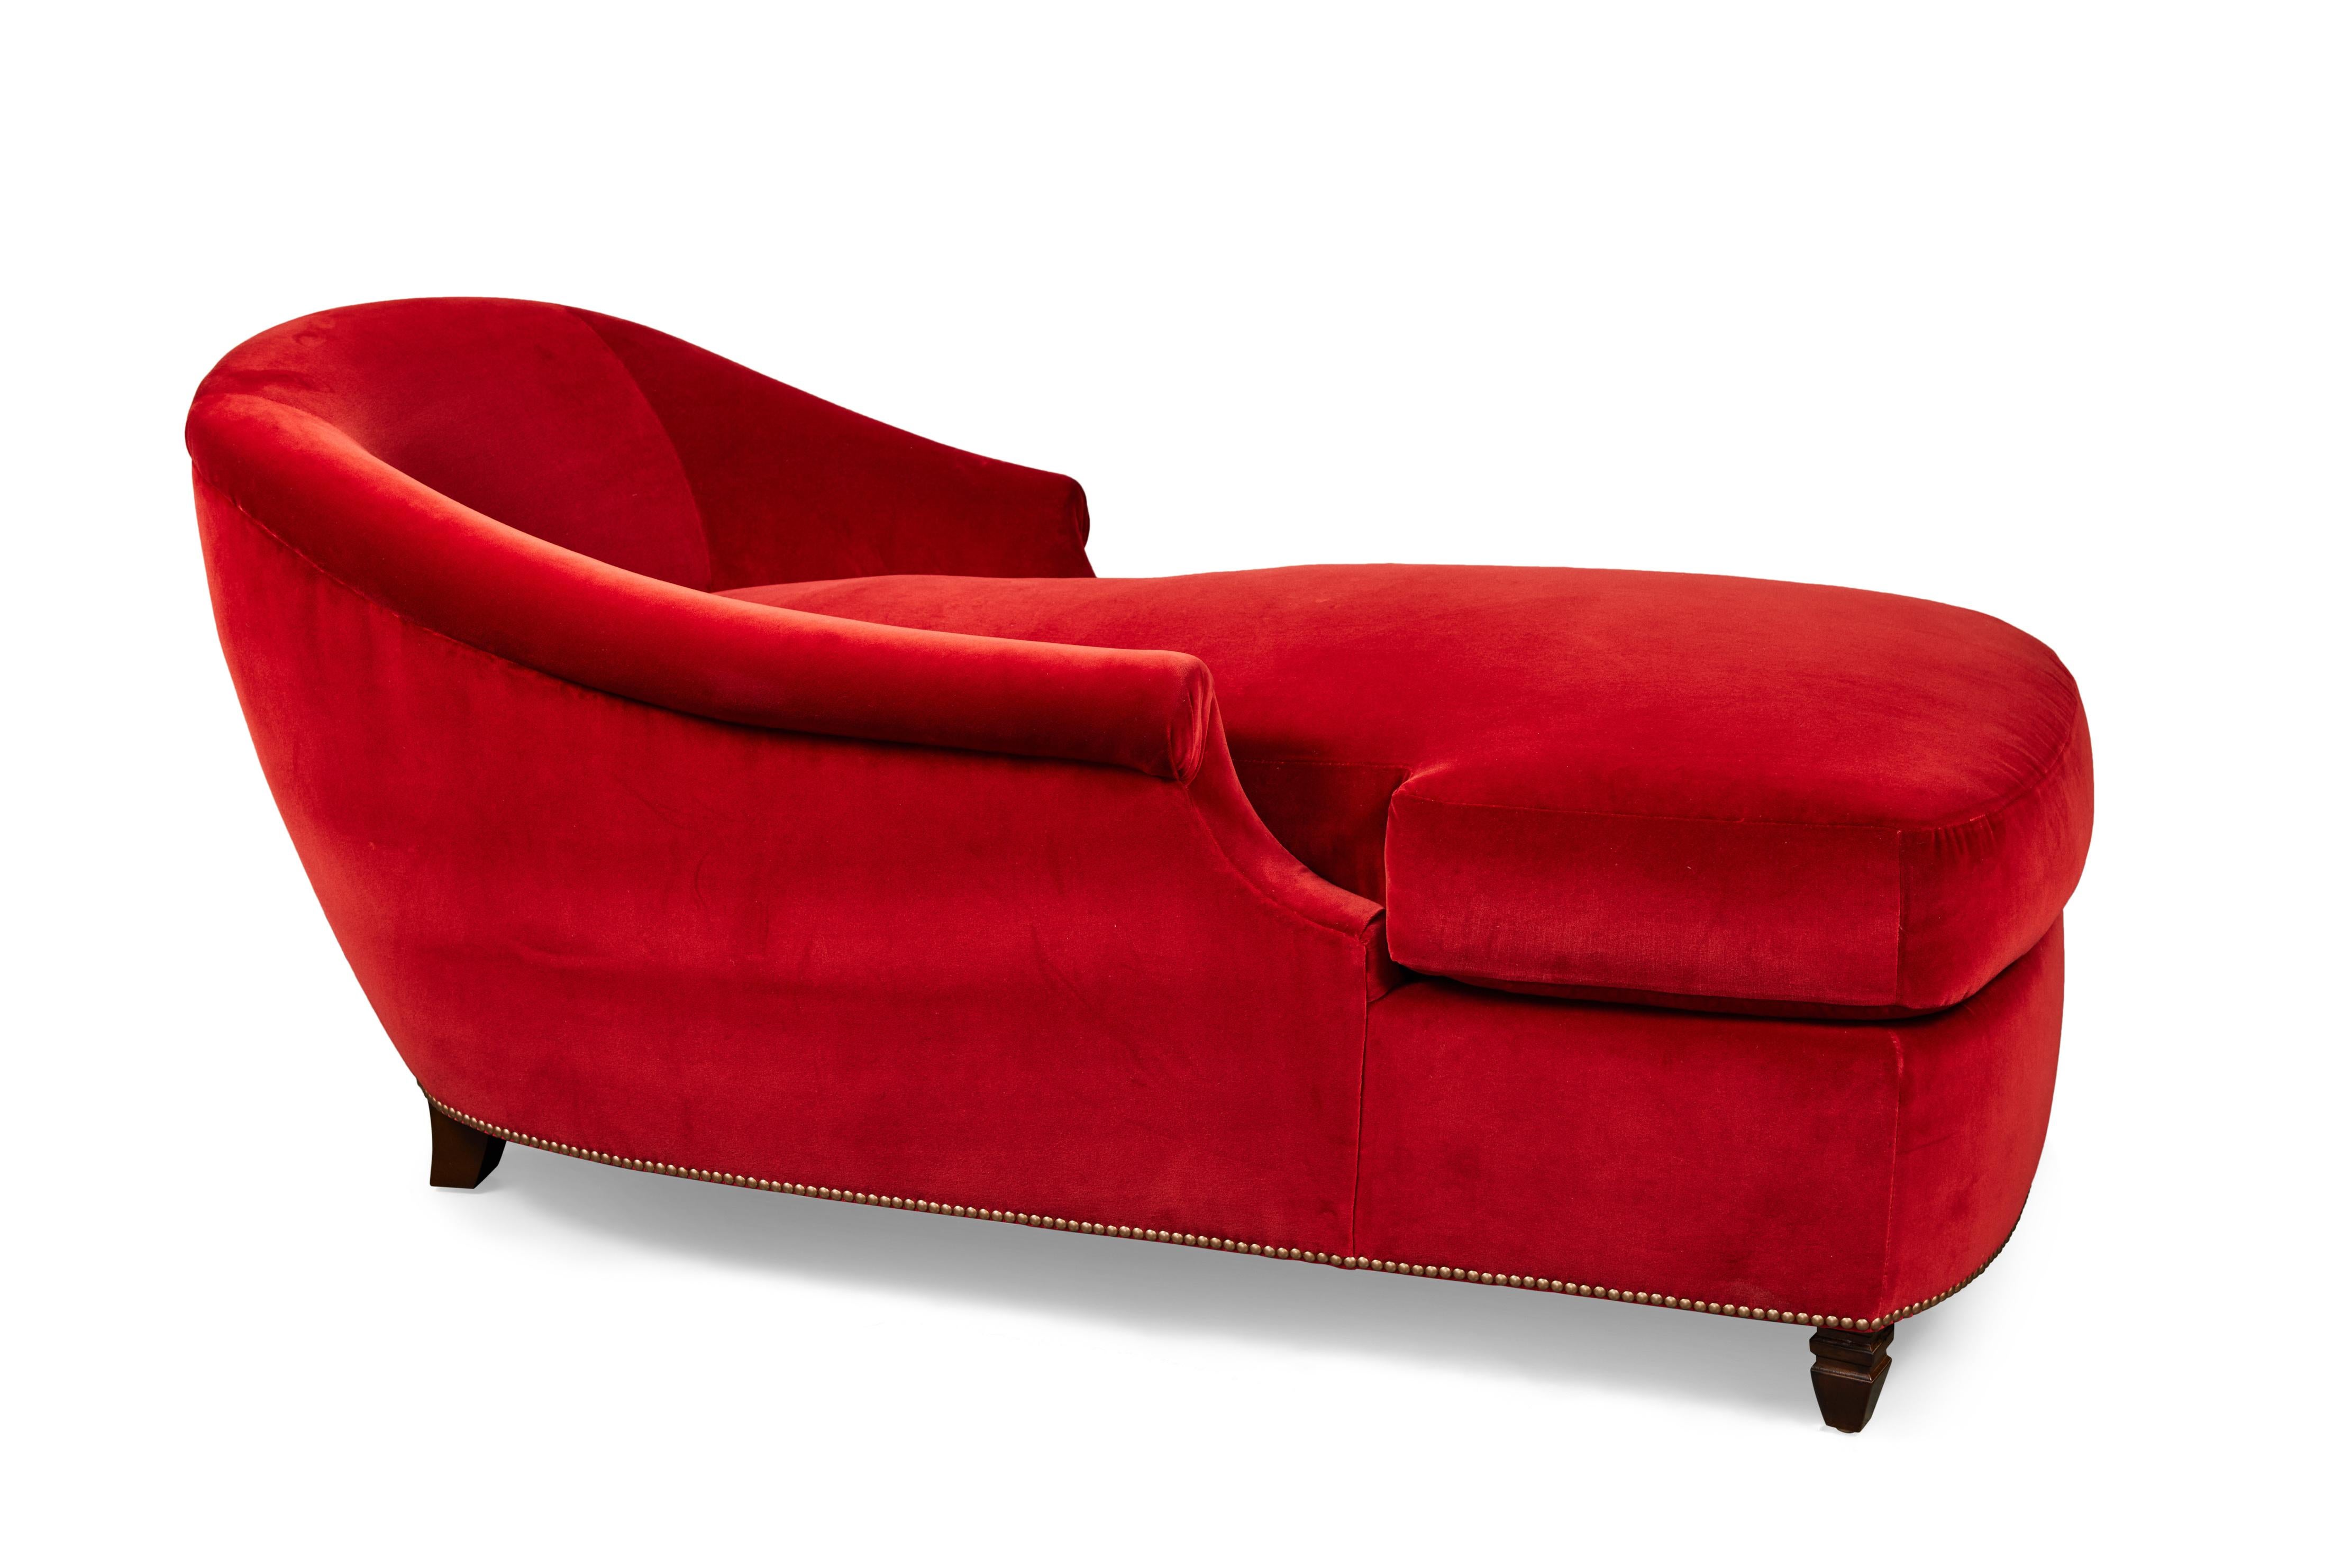 Wood Custom Chaise Lounge Upholstered in Belgian Cotton Velvet